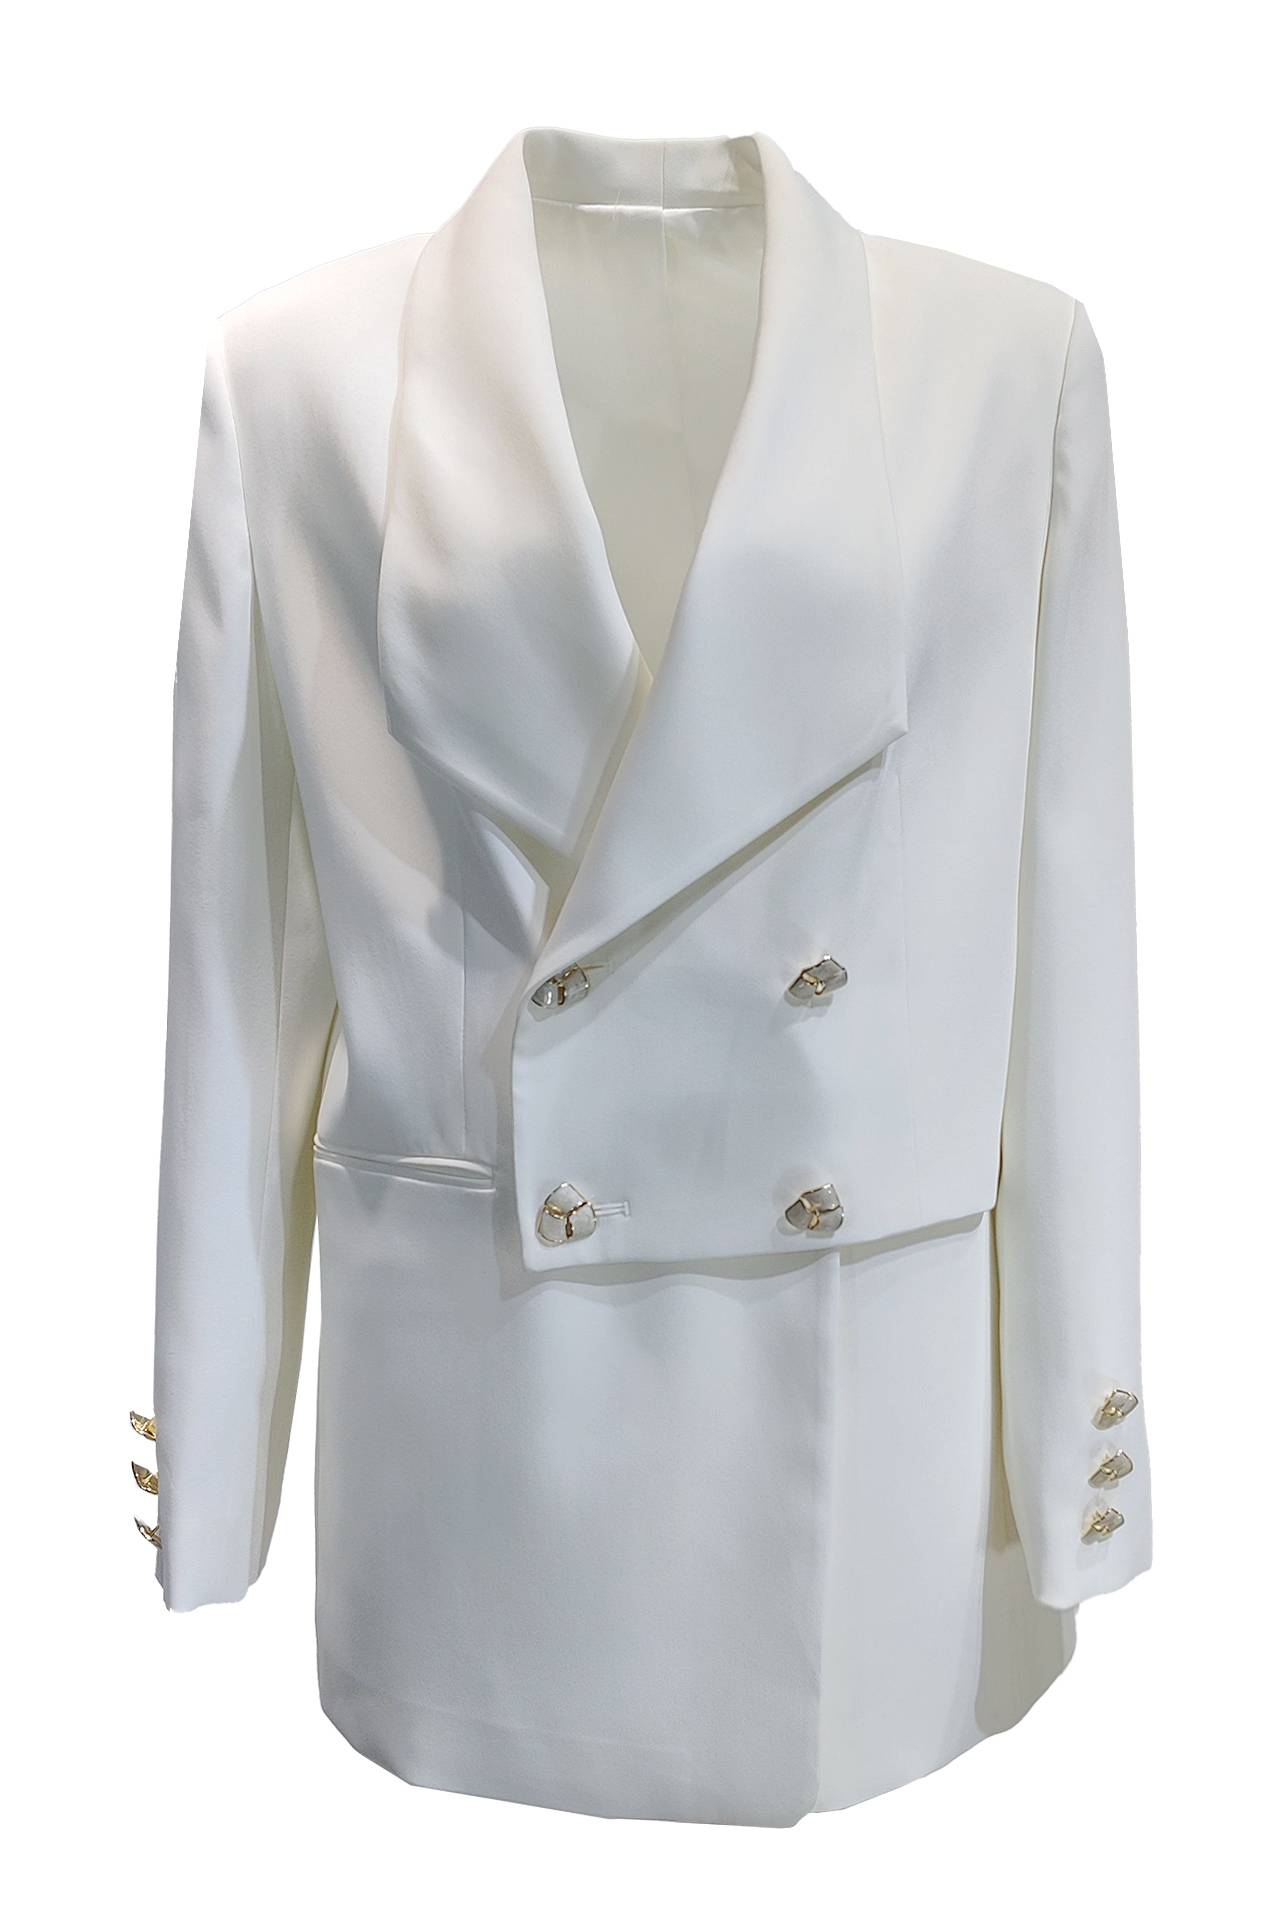 白色雙排釦特殊翻領西裝外套